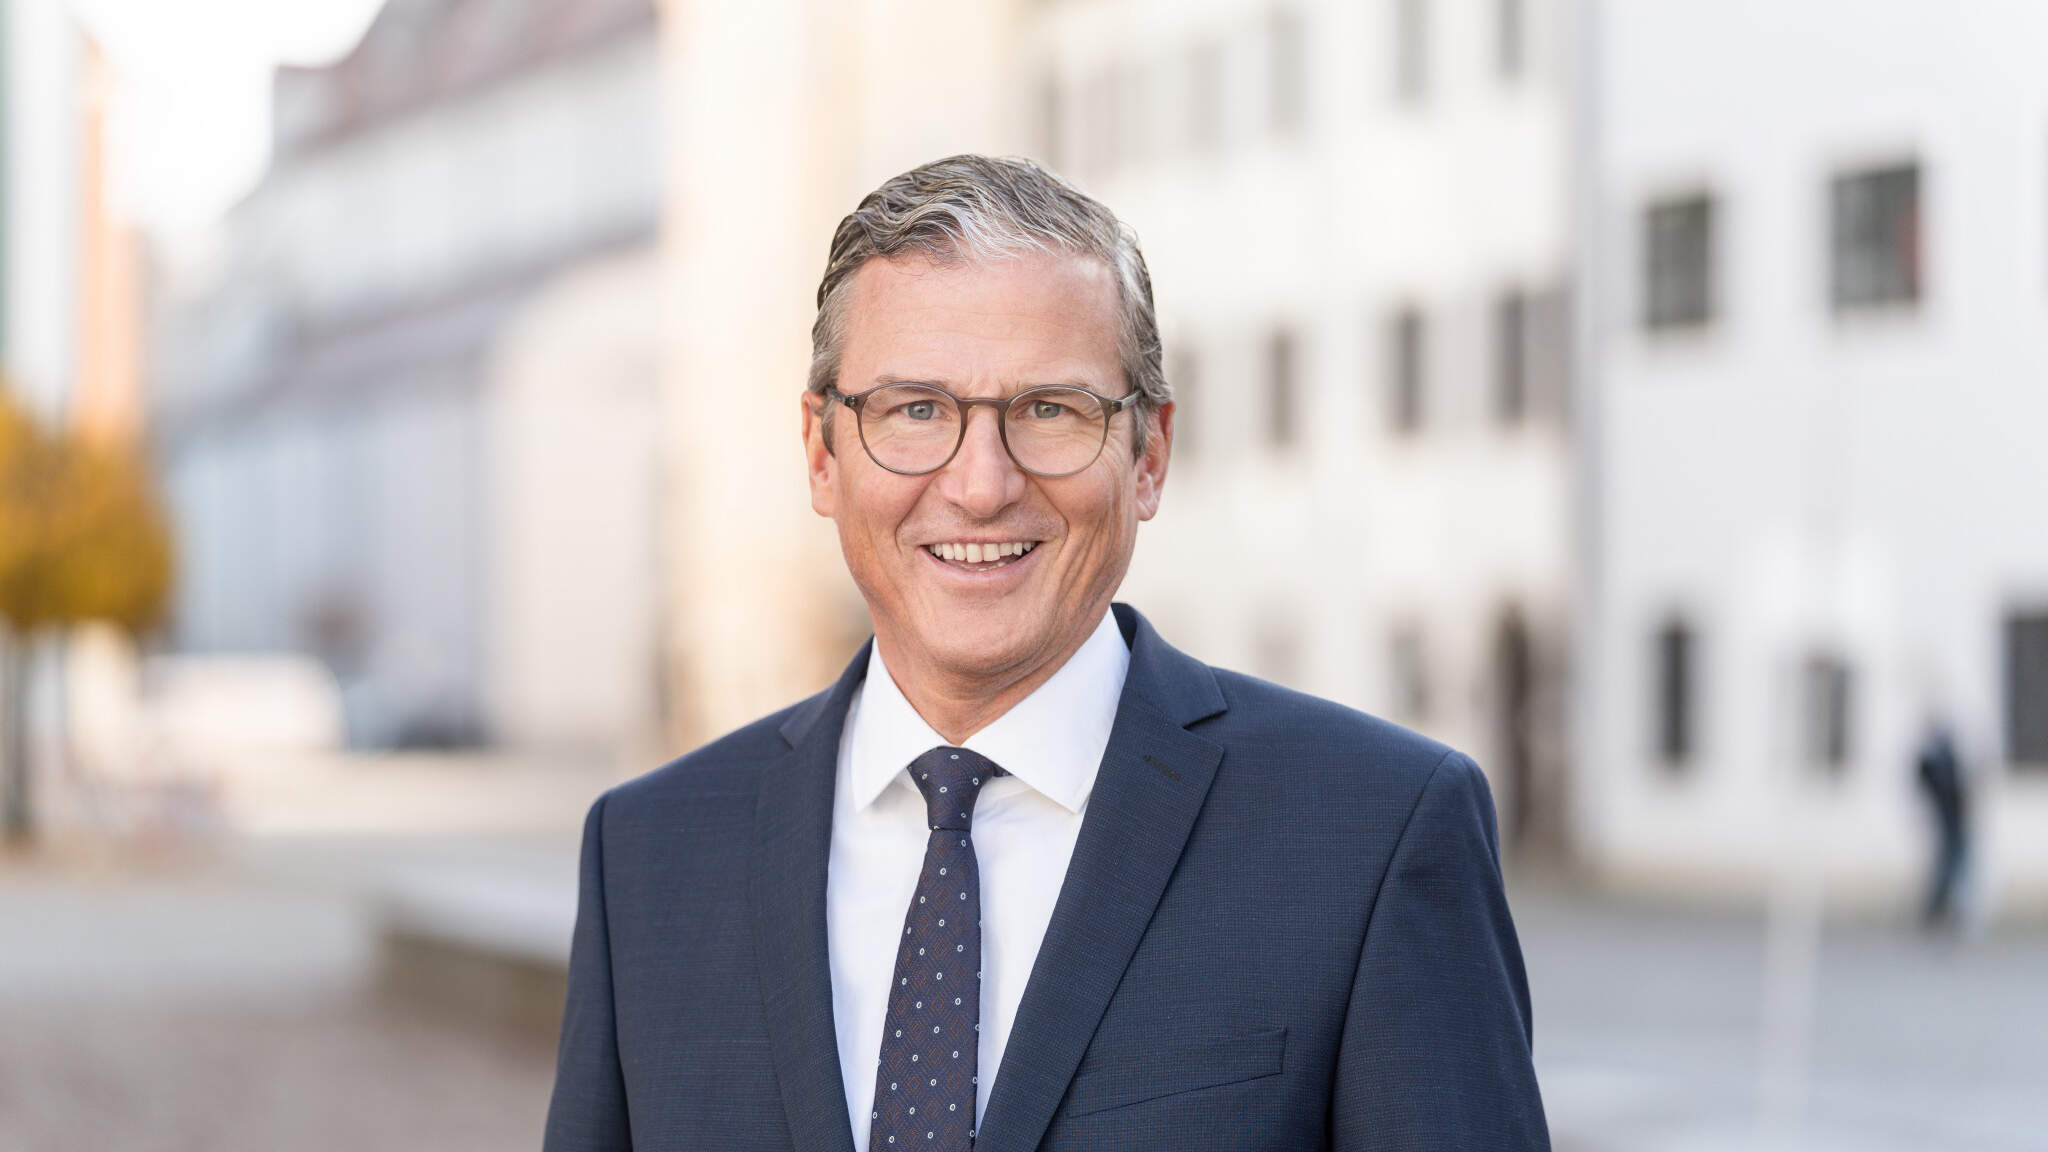 Changement au sein du conseil d'administration de DACHSER: le CFO Robert Erni quittera l'entreprise à la mi-2023.